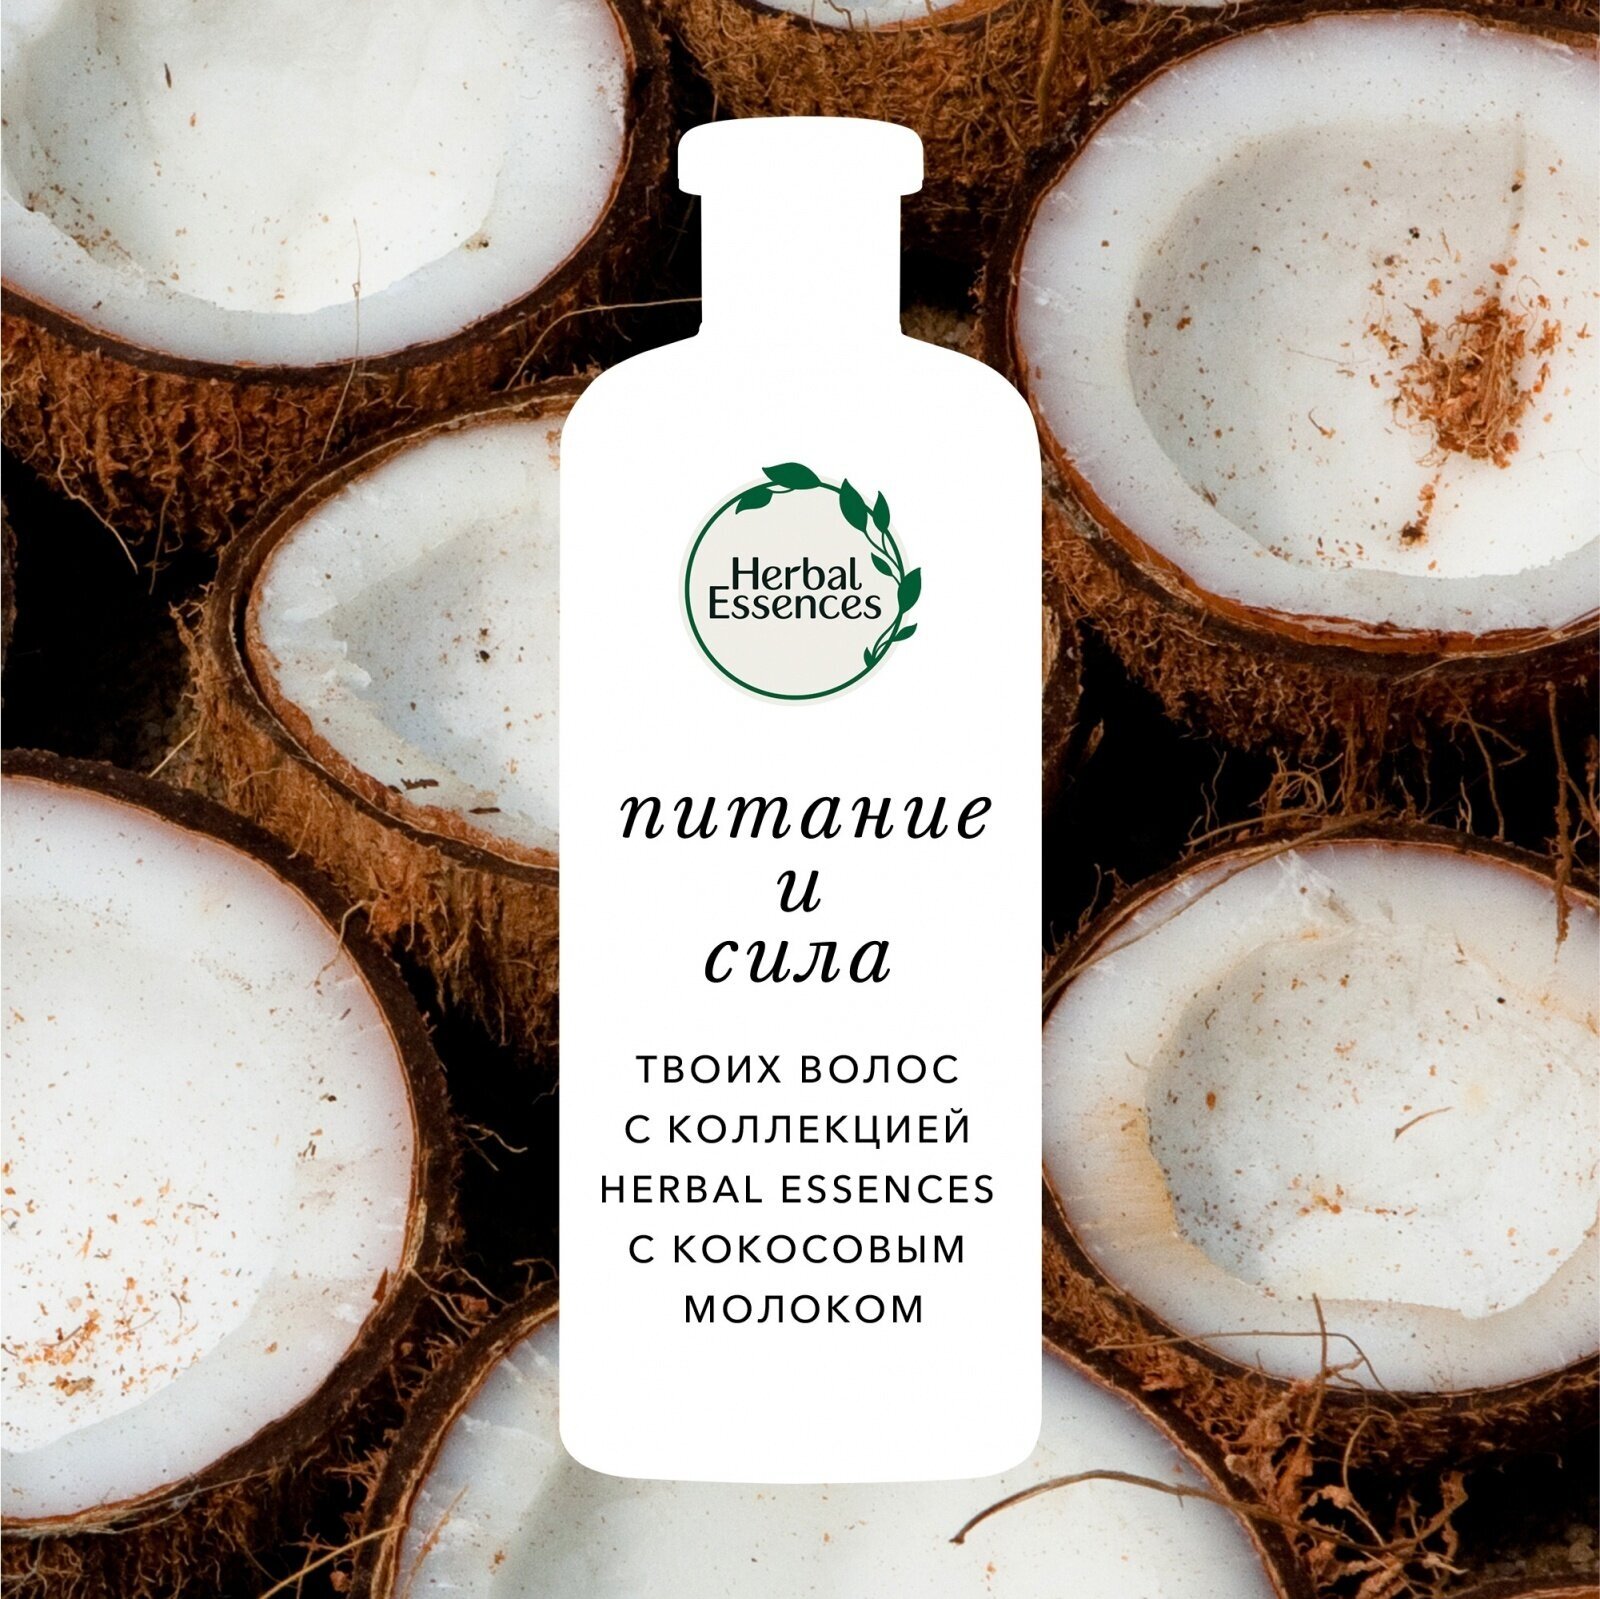 Herbal Essences Бальзам-ополаскиватель Кокосовое молоко для питания и укрепления волос, Хербал Эсенсес, 275 мл, 